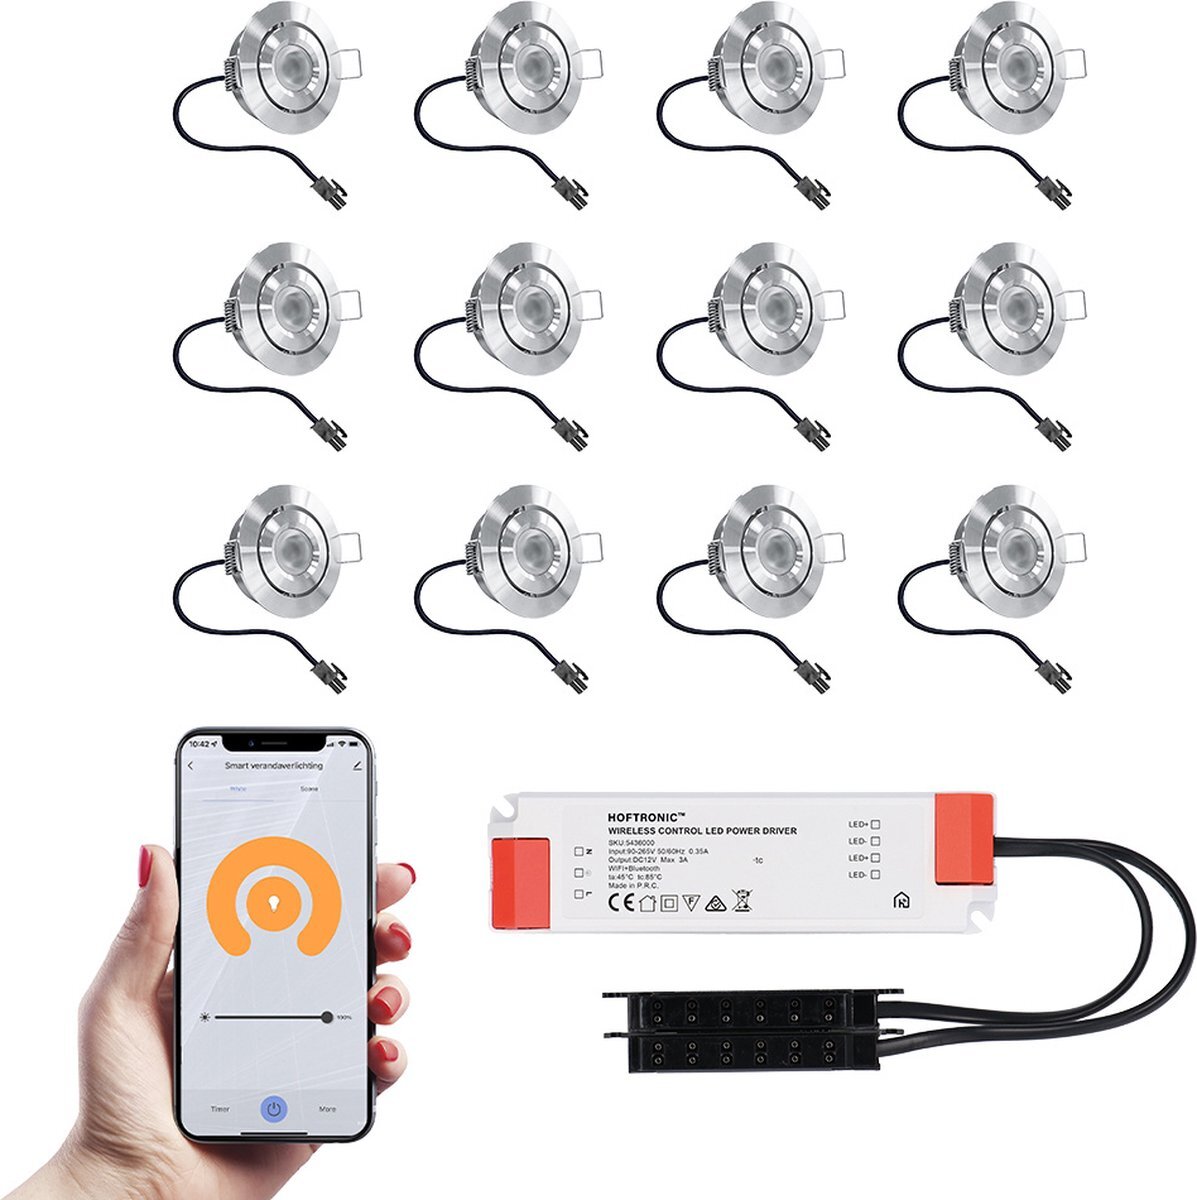 HOFTRONIC 12x Sienna RVS Smart LED Inbouwspots complete set - Wifi & Bluetooth - 12V - 3 Watt - 2700K warm wit - Veranda verlichting - Voor binnen en buiten